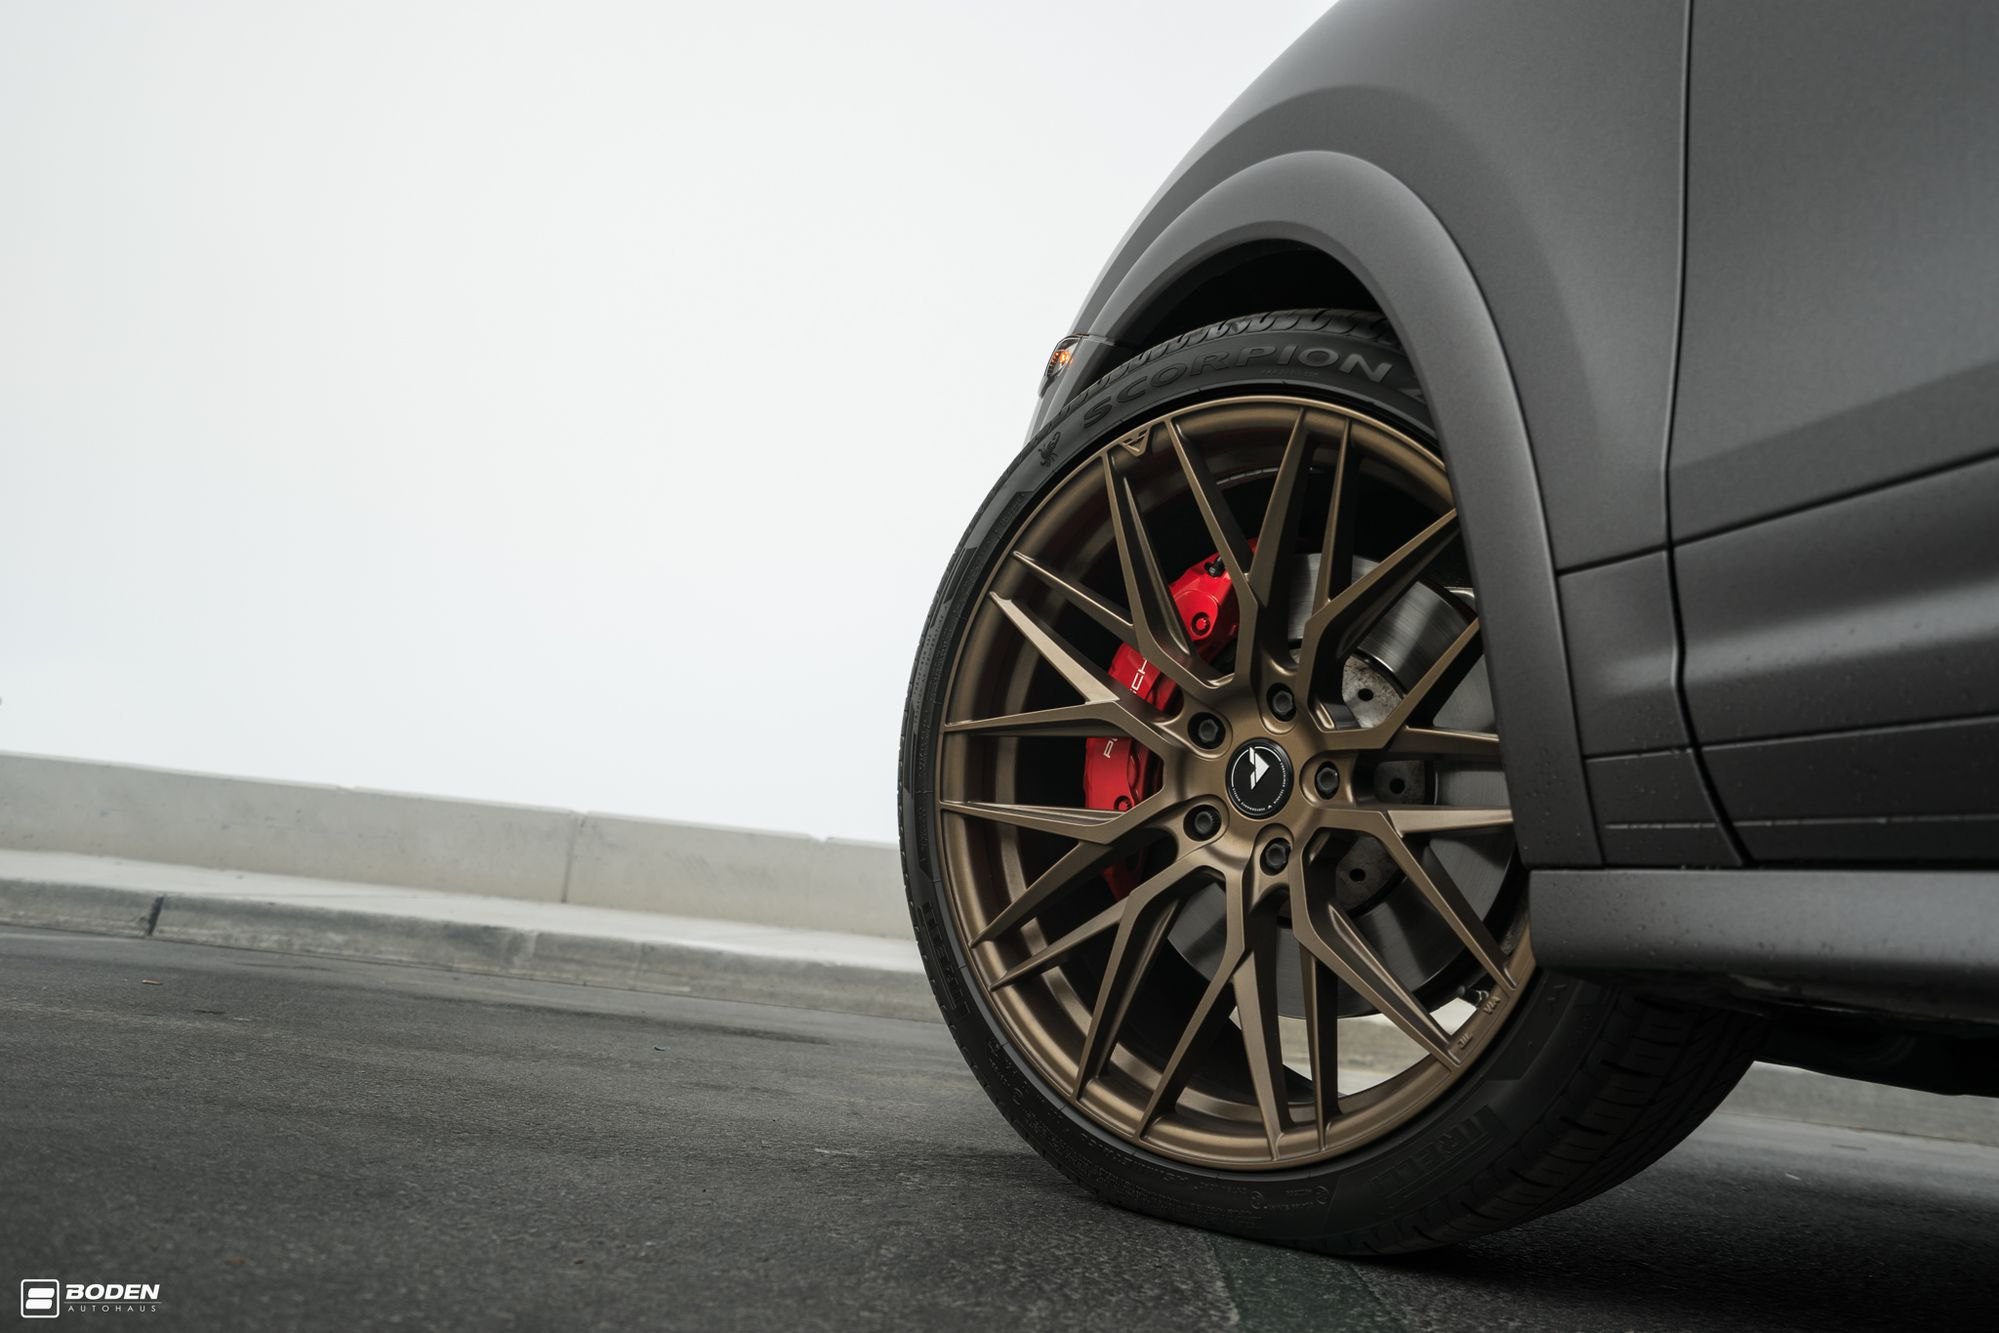 Pirelli Scorpion Tires on Black Matte Porsche Cayenne - Photo by Vorstiner